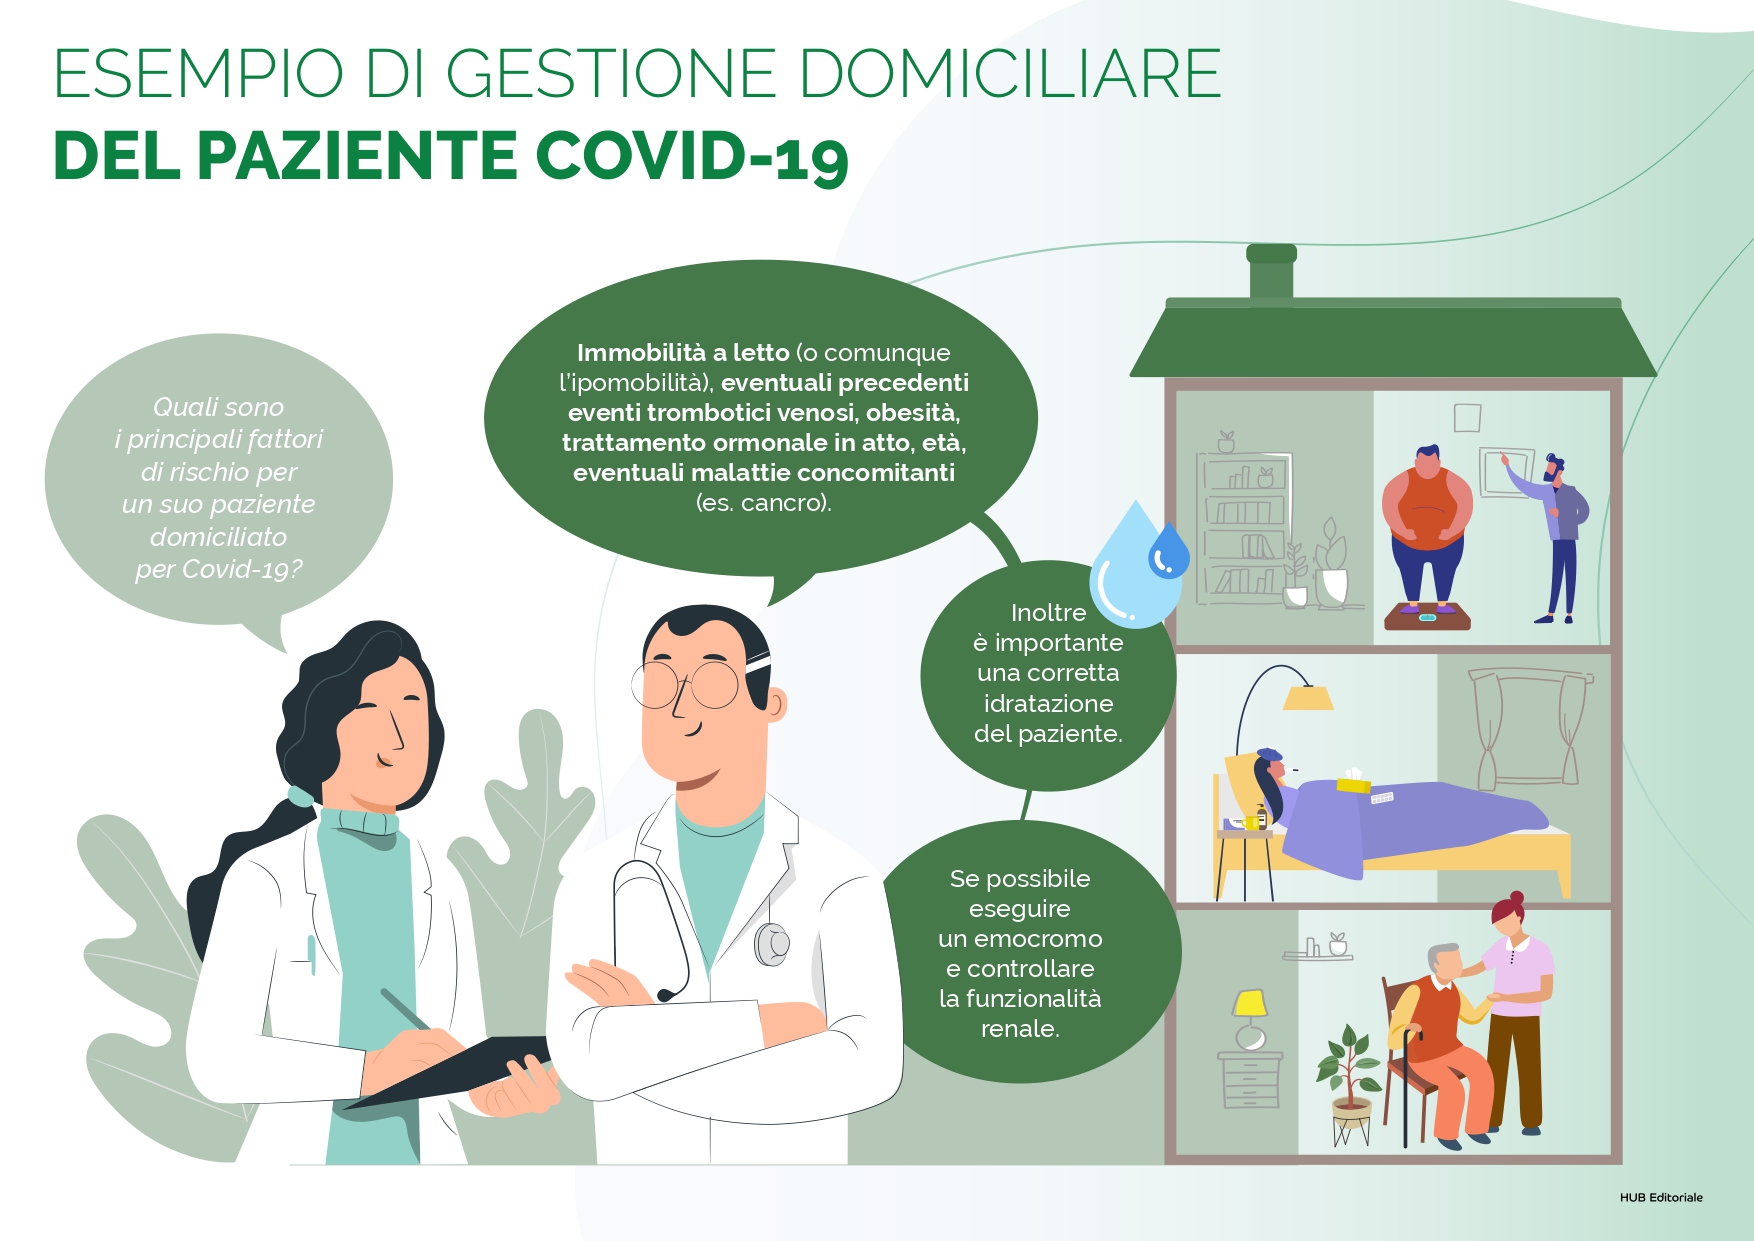 La profilassi antitrombotica a domicilio nei pazienti affetti da Covid-19, il modello Cremona